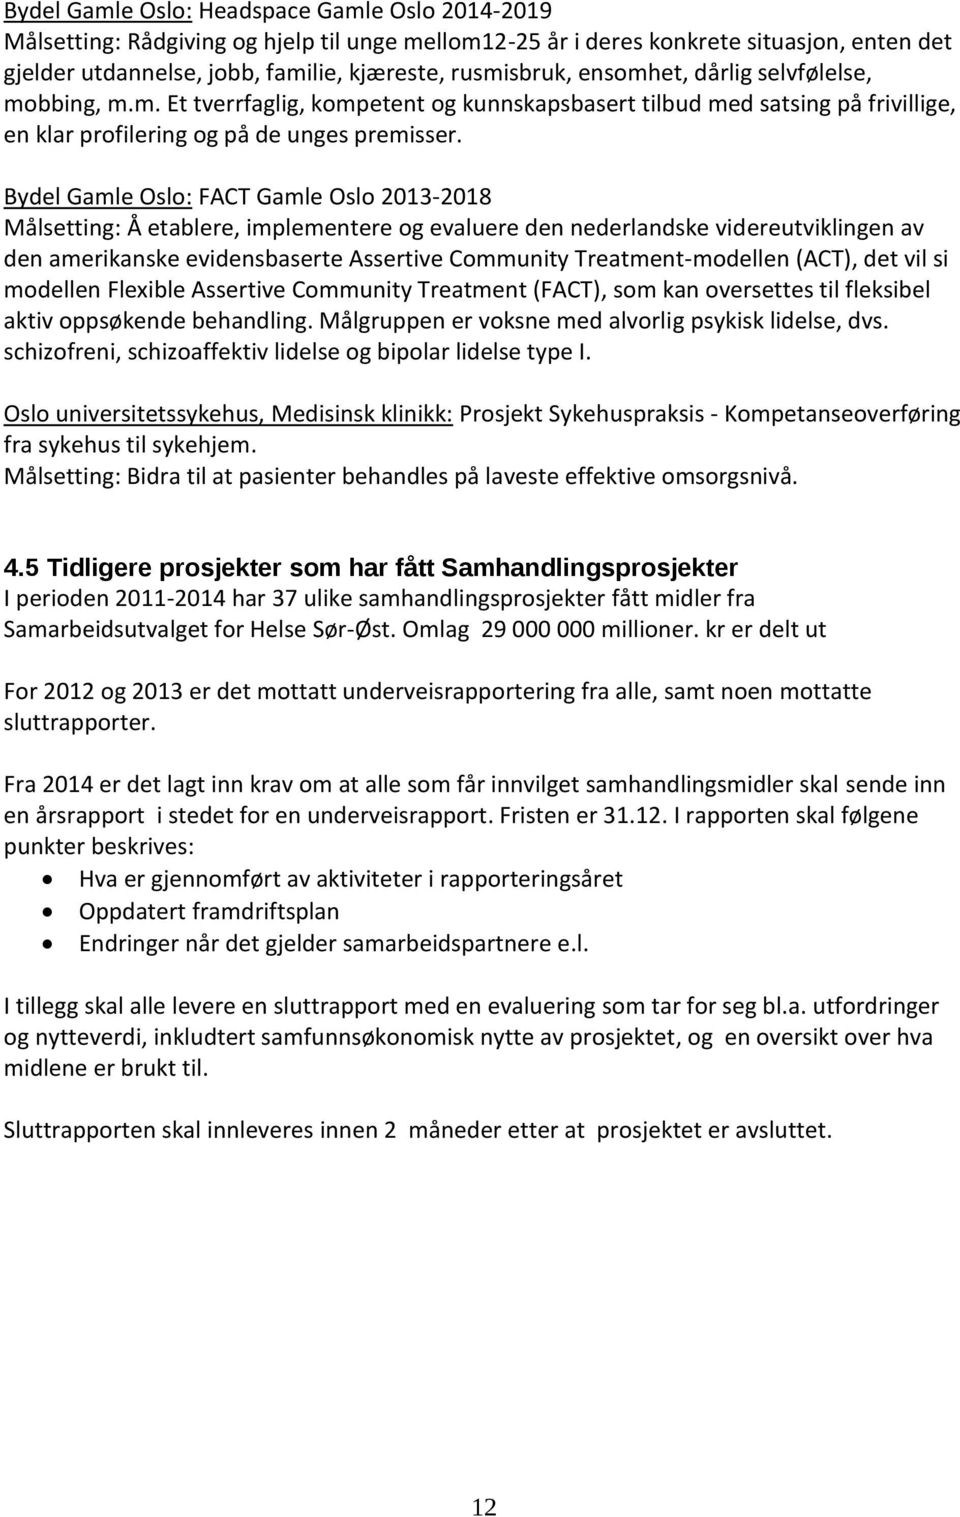 Bydel Gamle Oslo: FACT Gamle Oslo 2013-2018 Målsetting: I\/Iålsetting: Å Ã etablere, implementere og evaluere den nederlandske videreutviklingen av den amerikanske evidensbaserte Assertive Community